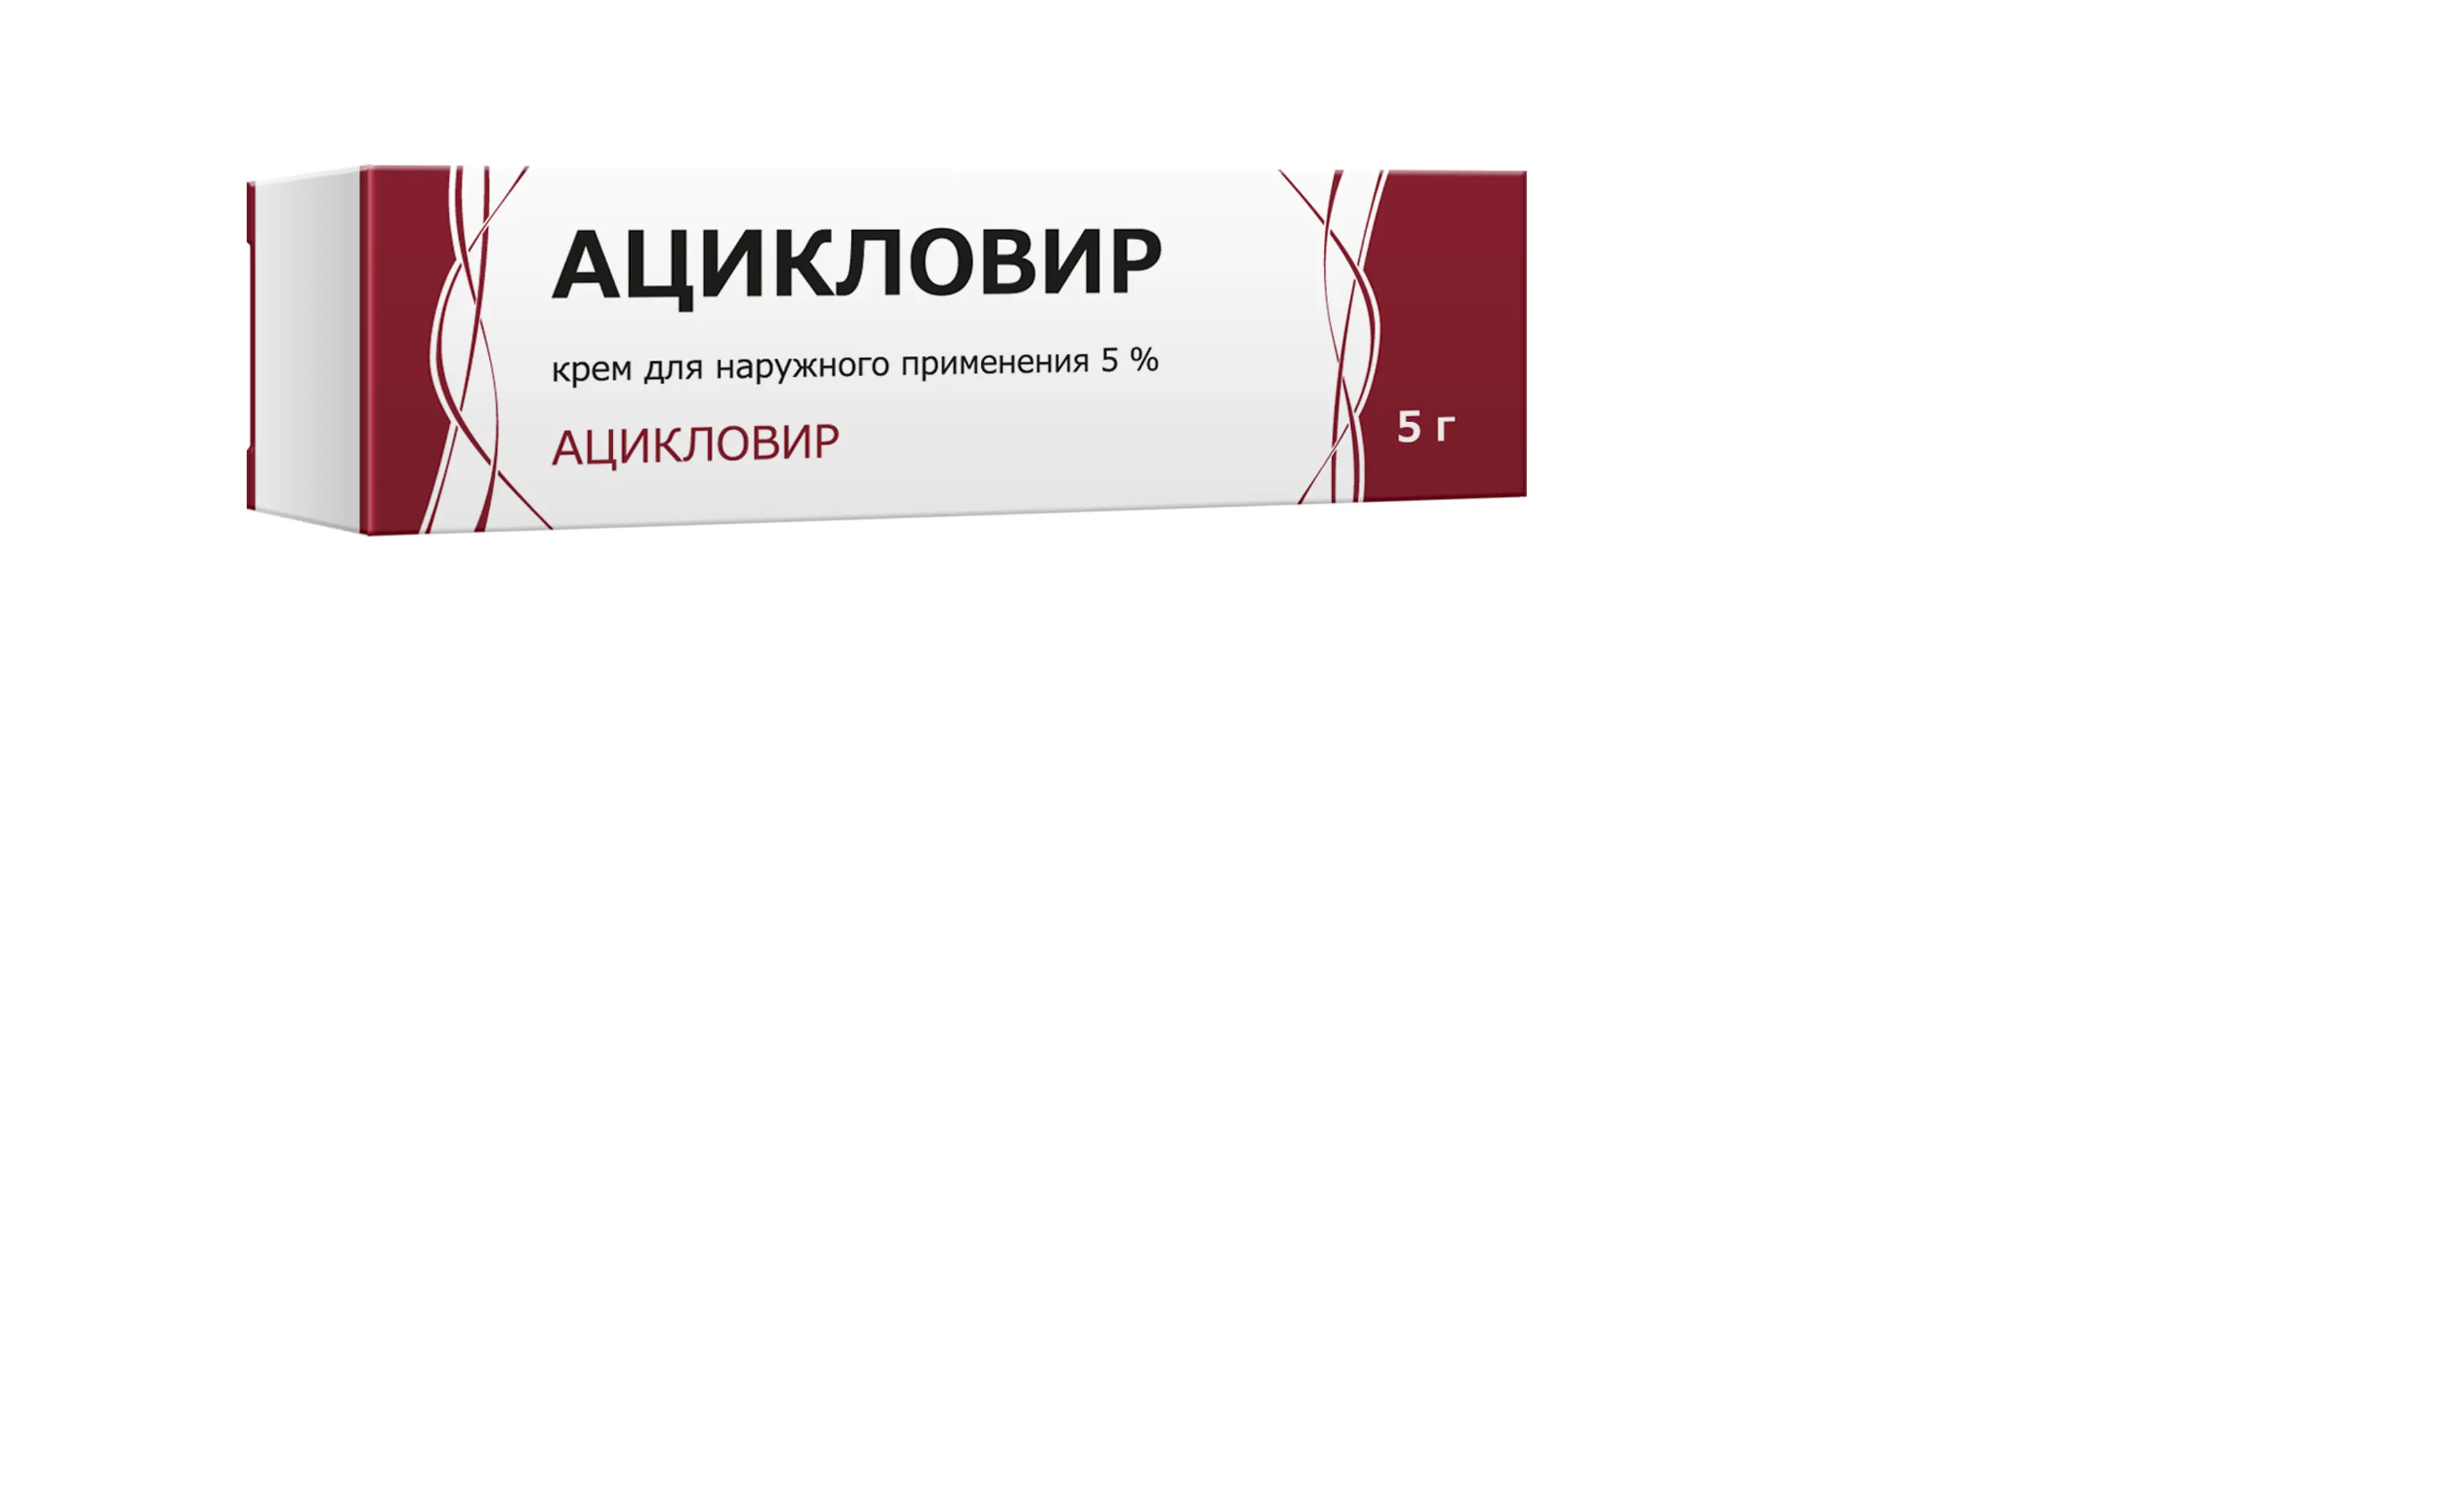 АЦИКЛОВИР крем (туба) 5% - 5г N1 (Тульская Ф.Ф., РФ)